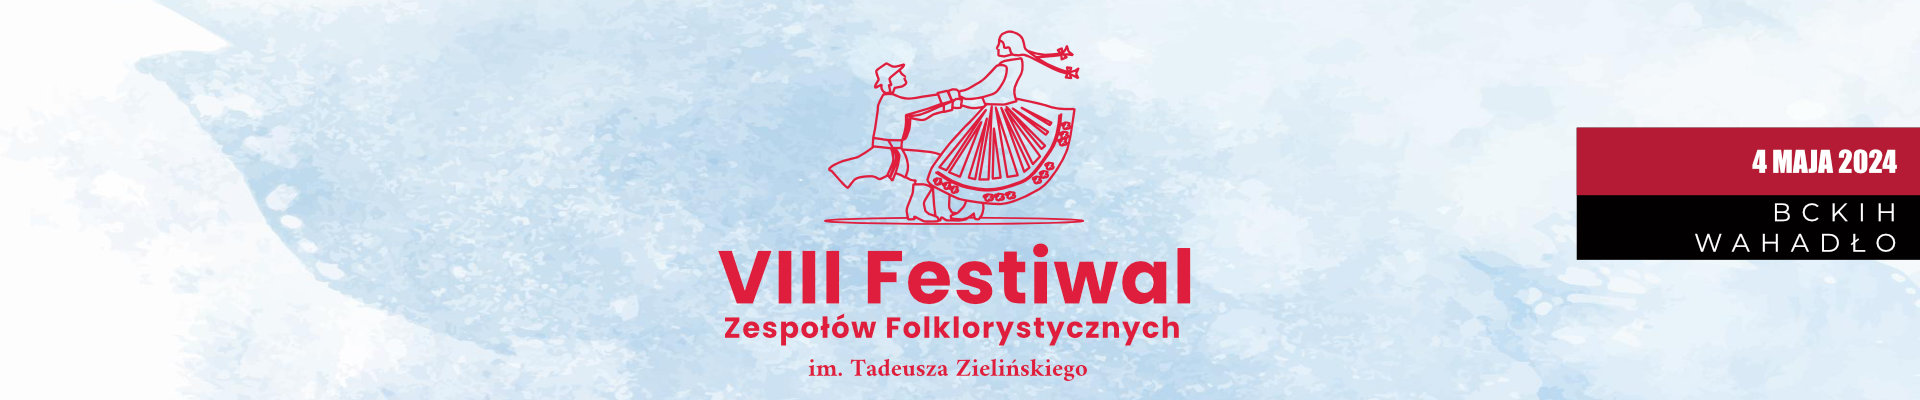 VIII Festiwal Zespołów Folklorystycznych im. Tadeusza Zielińskiego [4 maja]